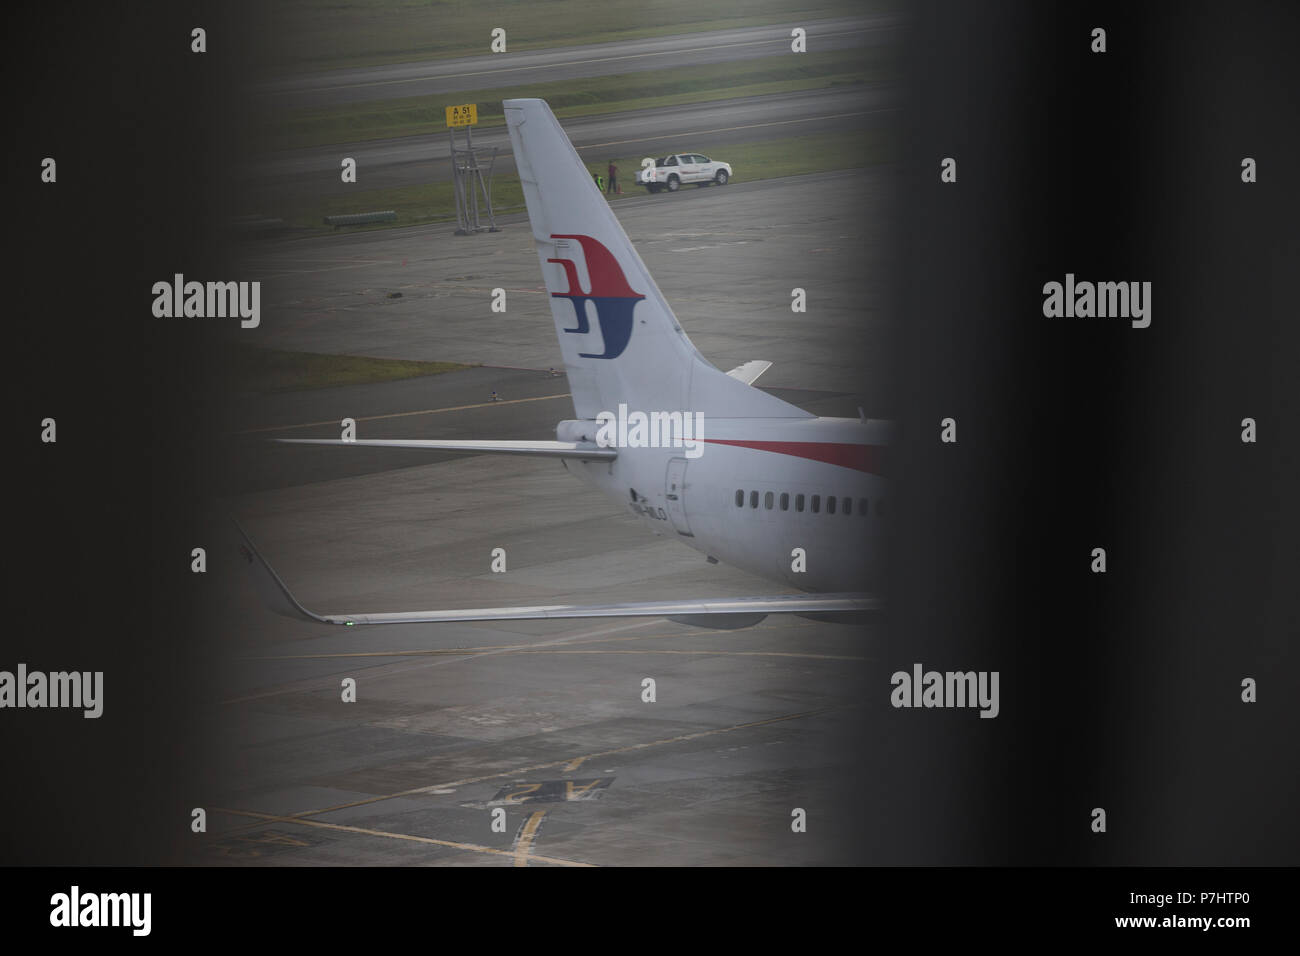 La Malaysian Airlines Boeing 737 taxis pour le terminal après l'atterrissage à l'Aéroport International de Kuala Lumpur. Banque D'Images